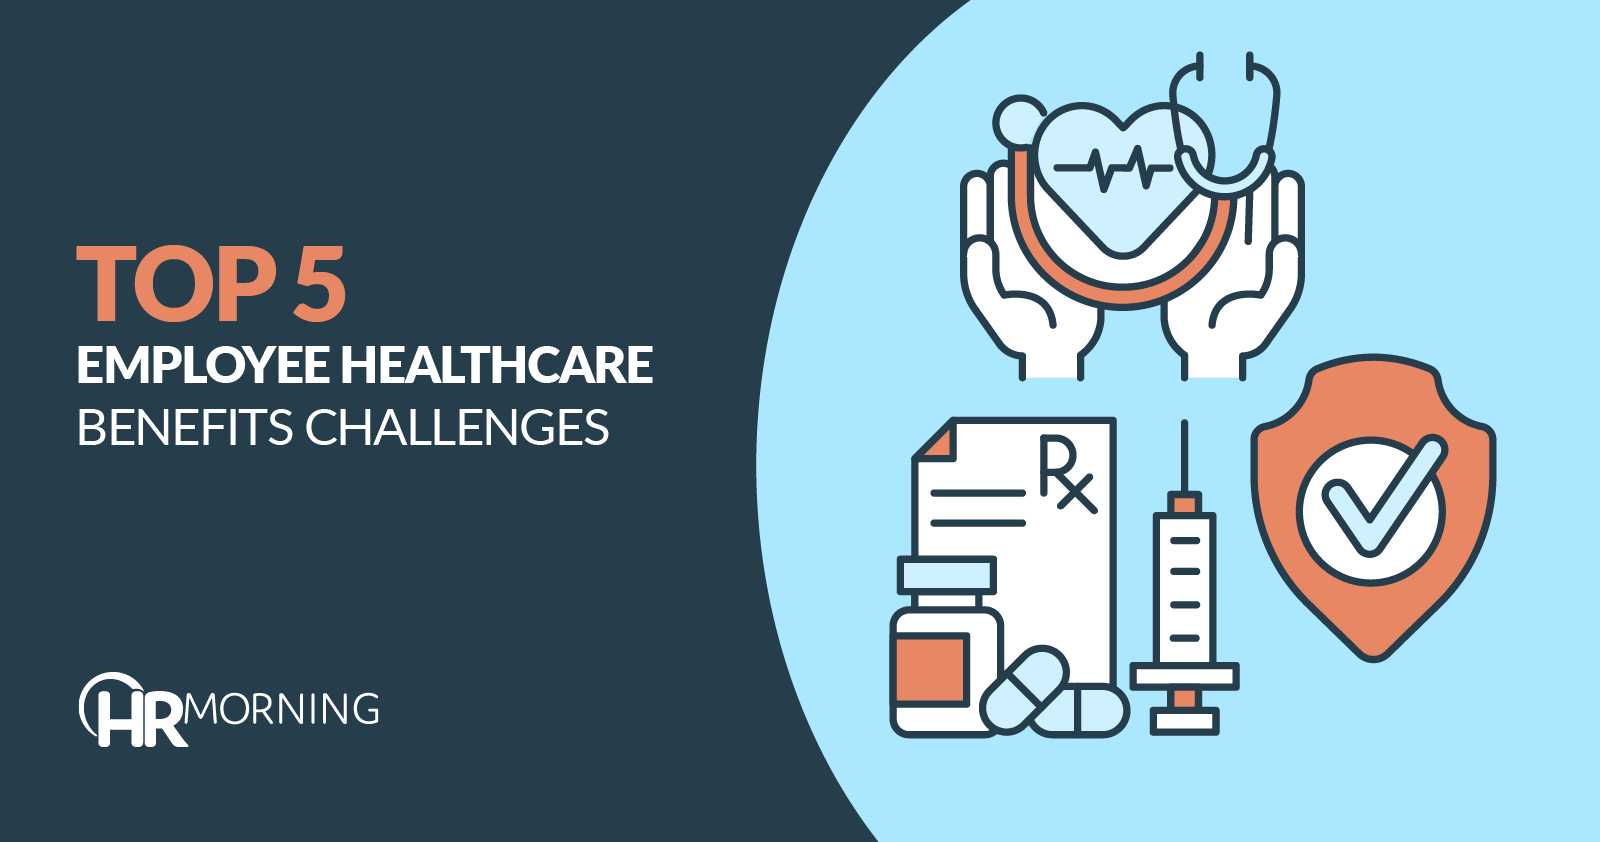 Top 5 employee healthcare benefits challenges